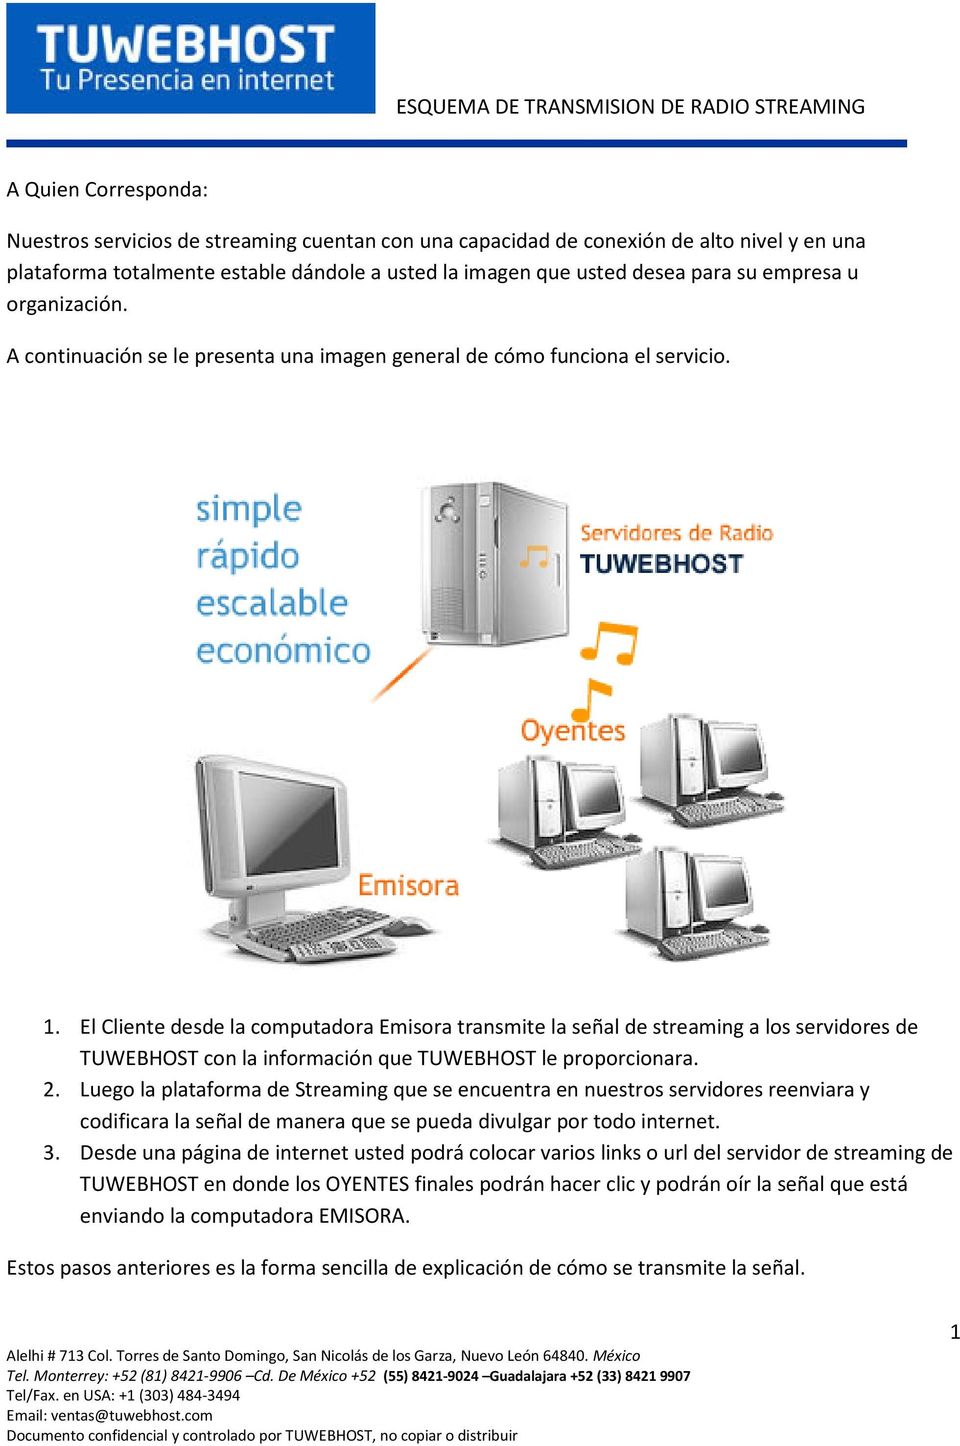 El Cliente desde la computadora Emisora transmite la señal de streaming a los servidores de TUWEBHOST con la información que TUWEBHOST le proporcionara. 2.